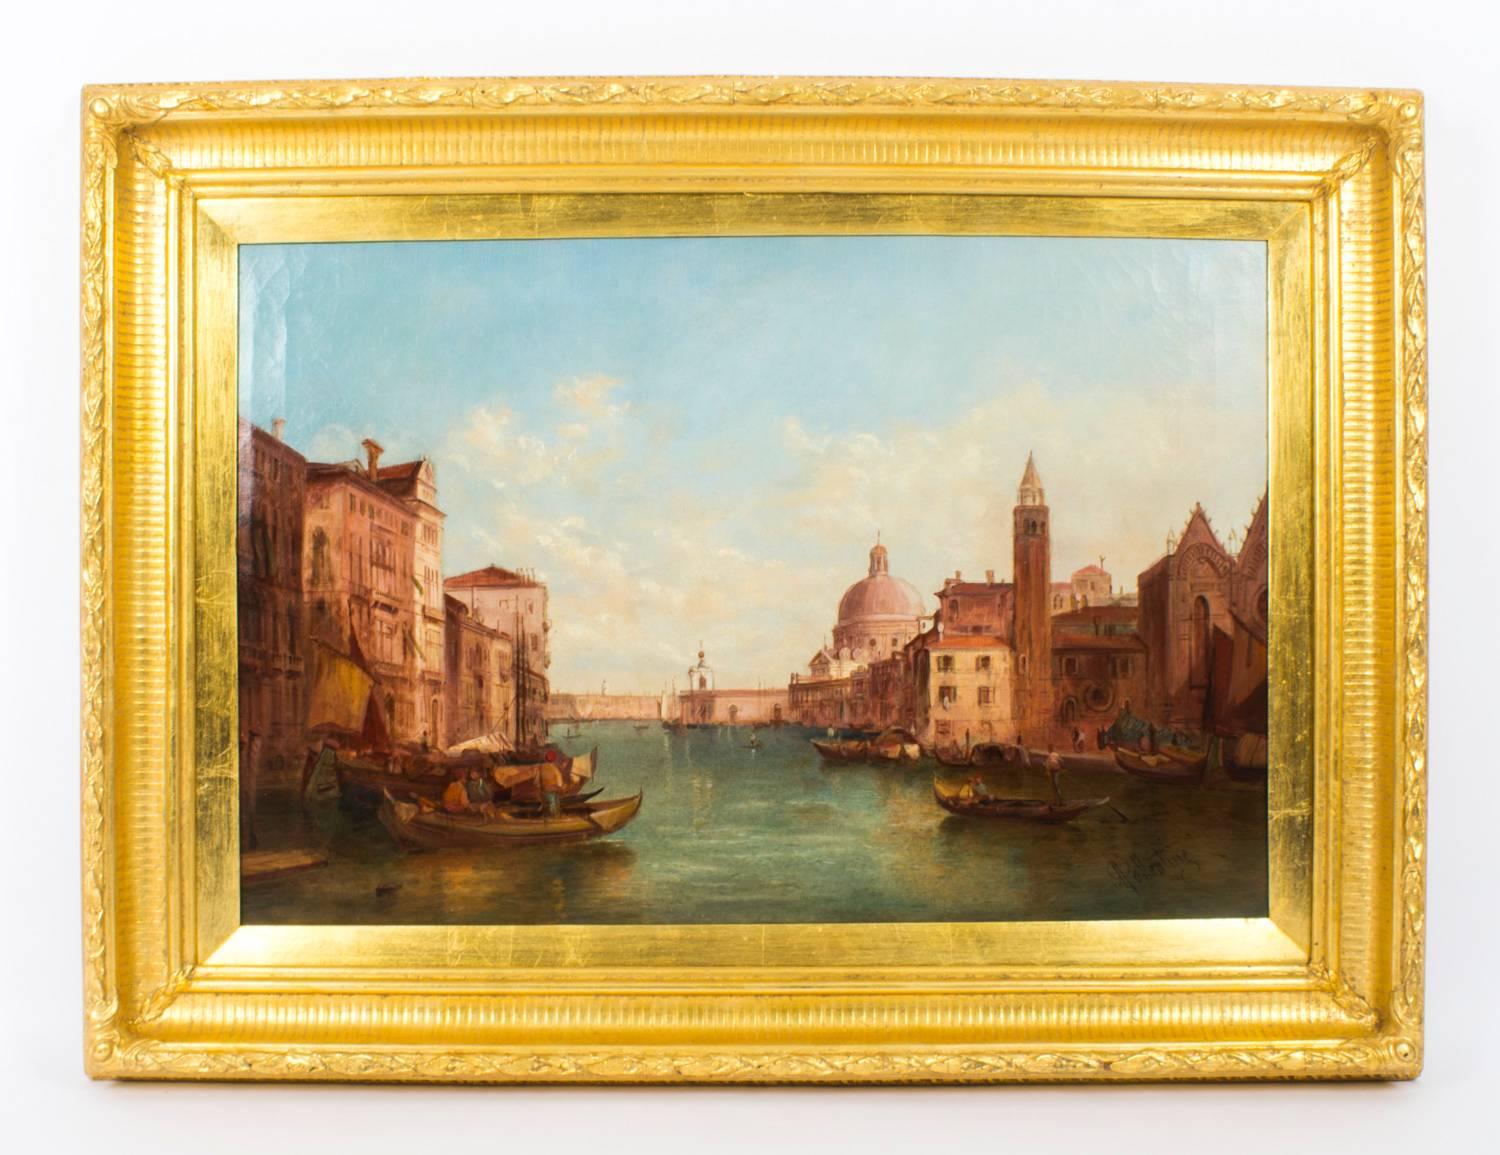 Dies ist ein schönes Paar von Öl auf Leinwand Gemälde der Blick auf den Canal Grande in Venedig von der renommierten britischen Künstler Alfred Pollentine (1836-1890) und jedes ist signiert unten rechts 